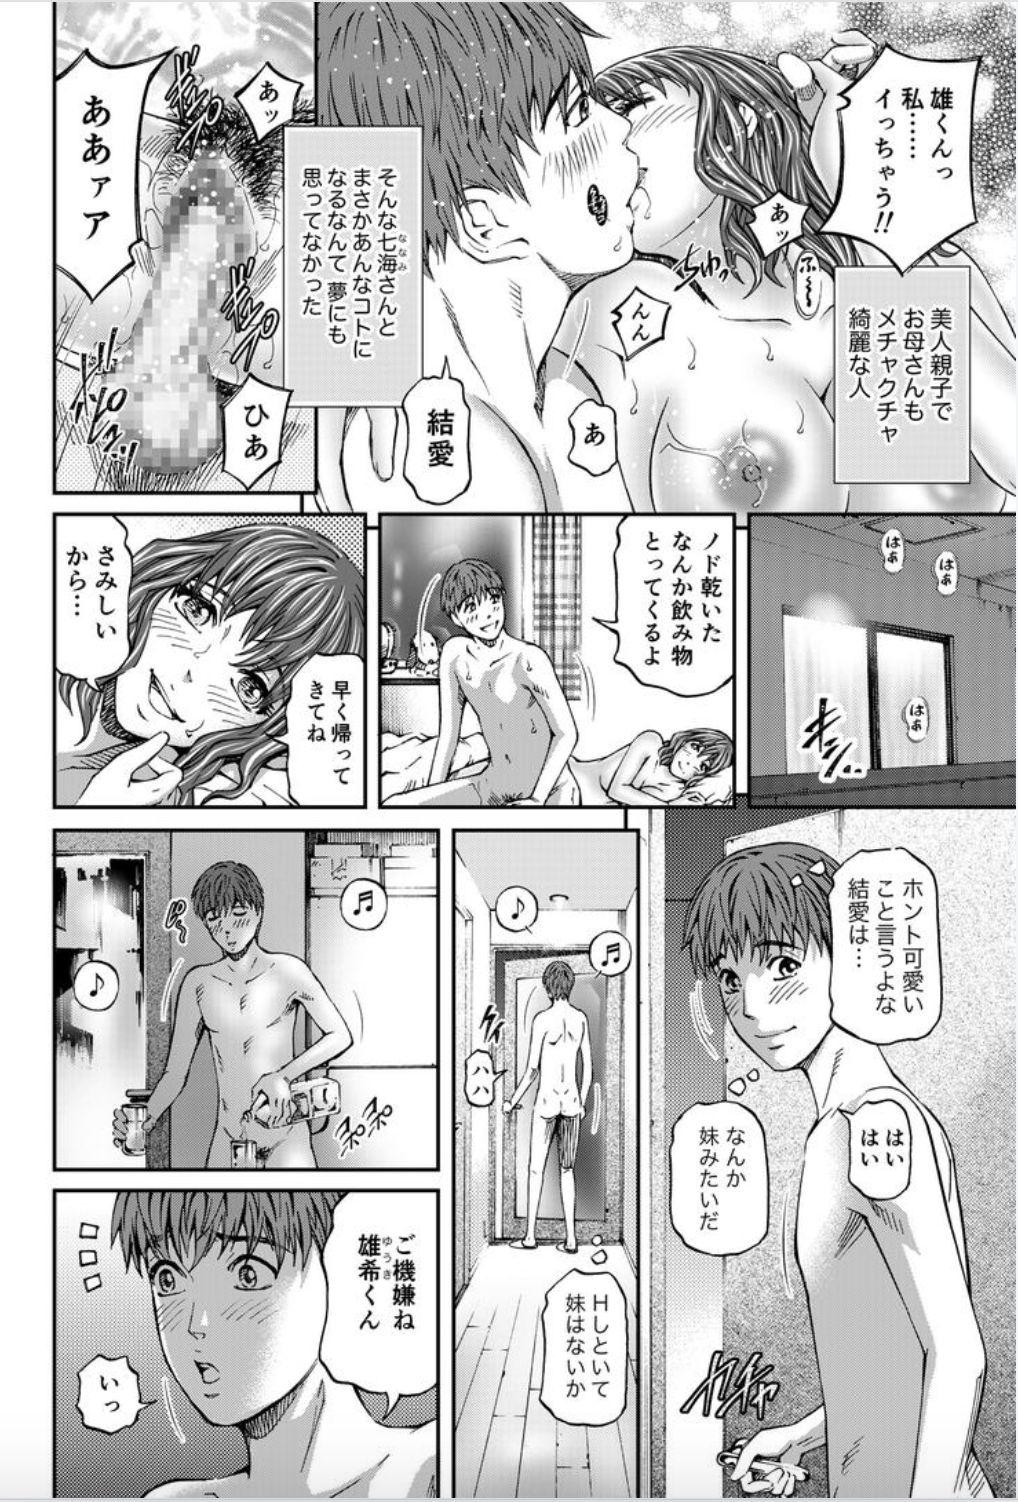 Fudendo Onna-tachi ga Iku Toki... Ero Drama Vol. 8 Datte, Kanojo no Haha ga... Safadinha - Page 4